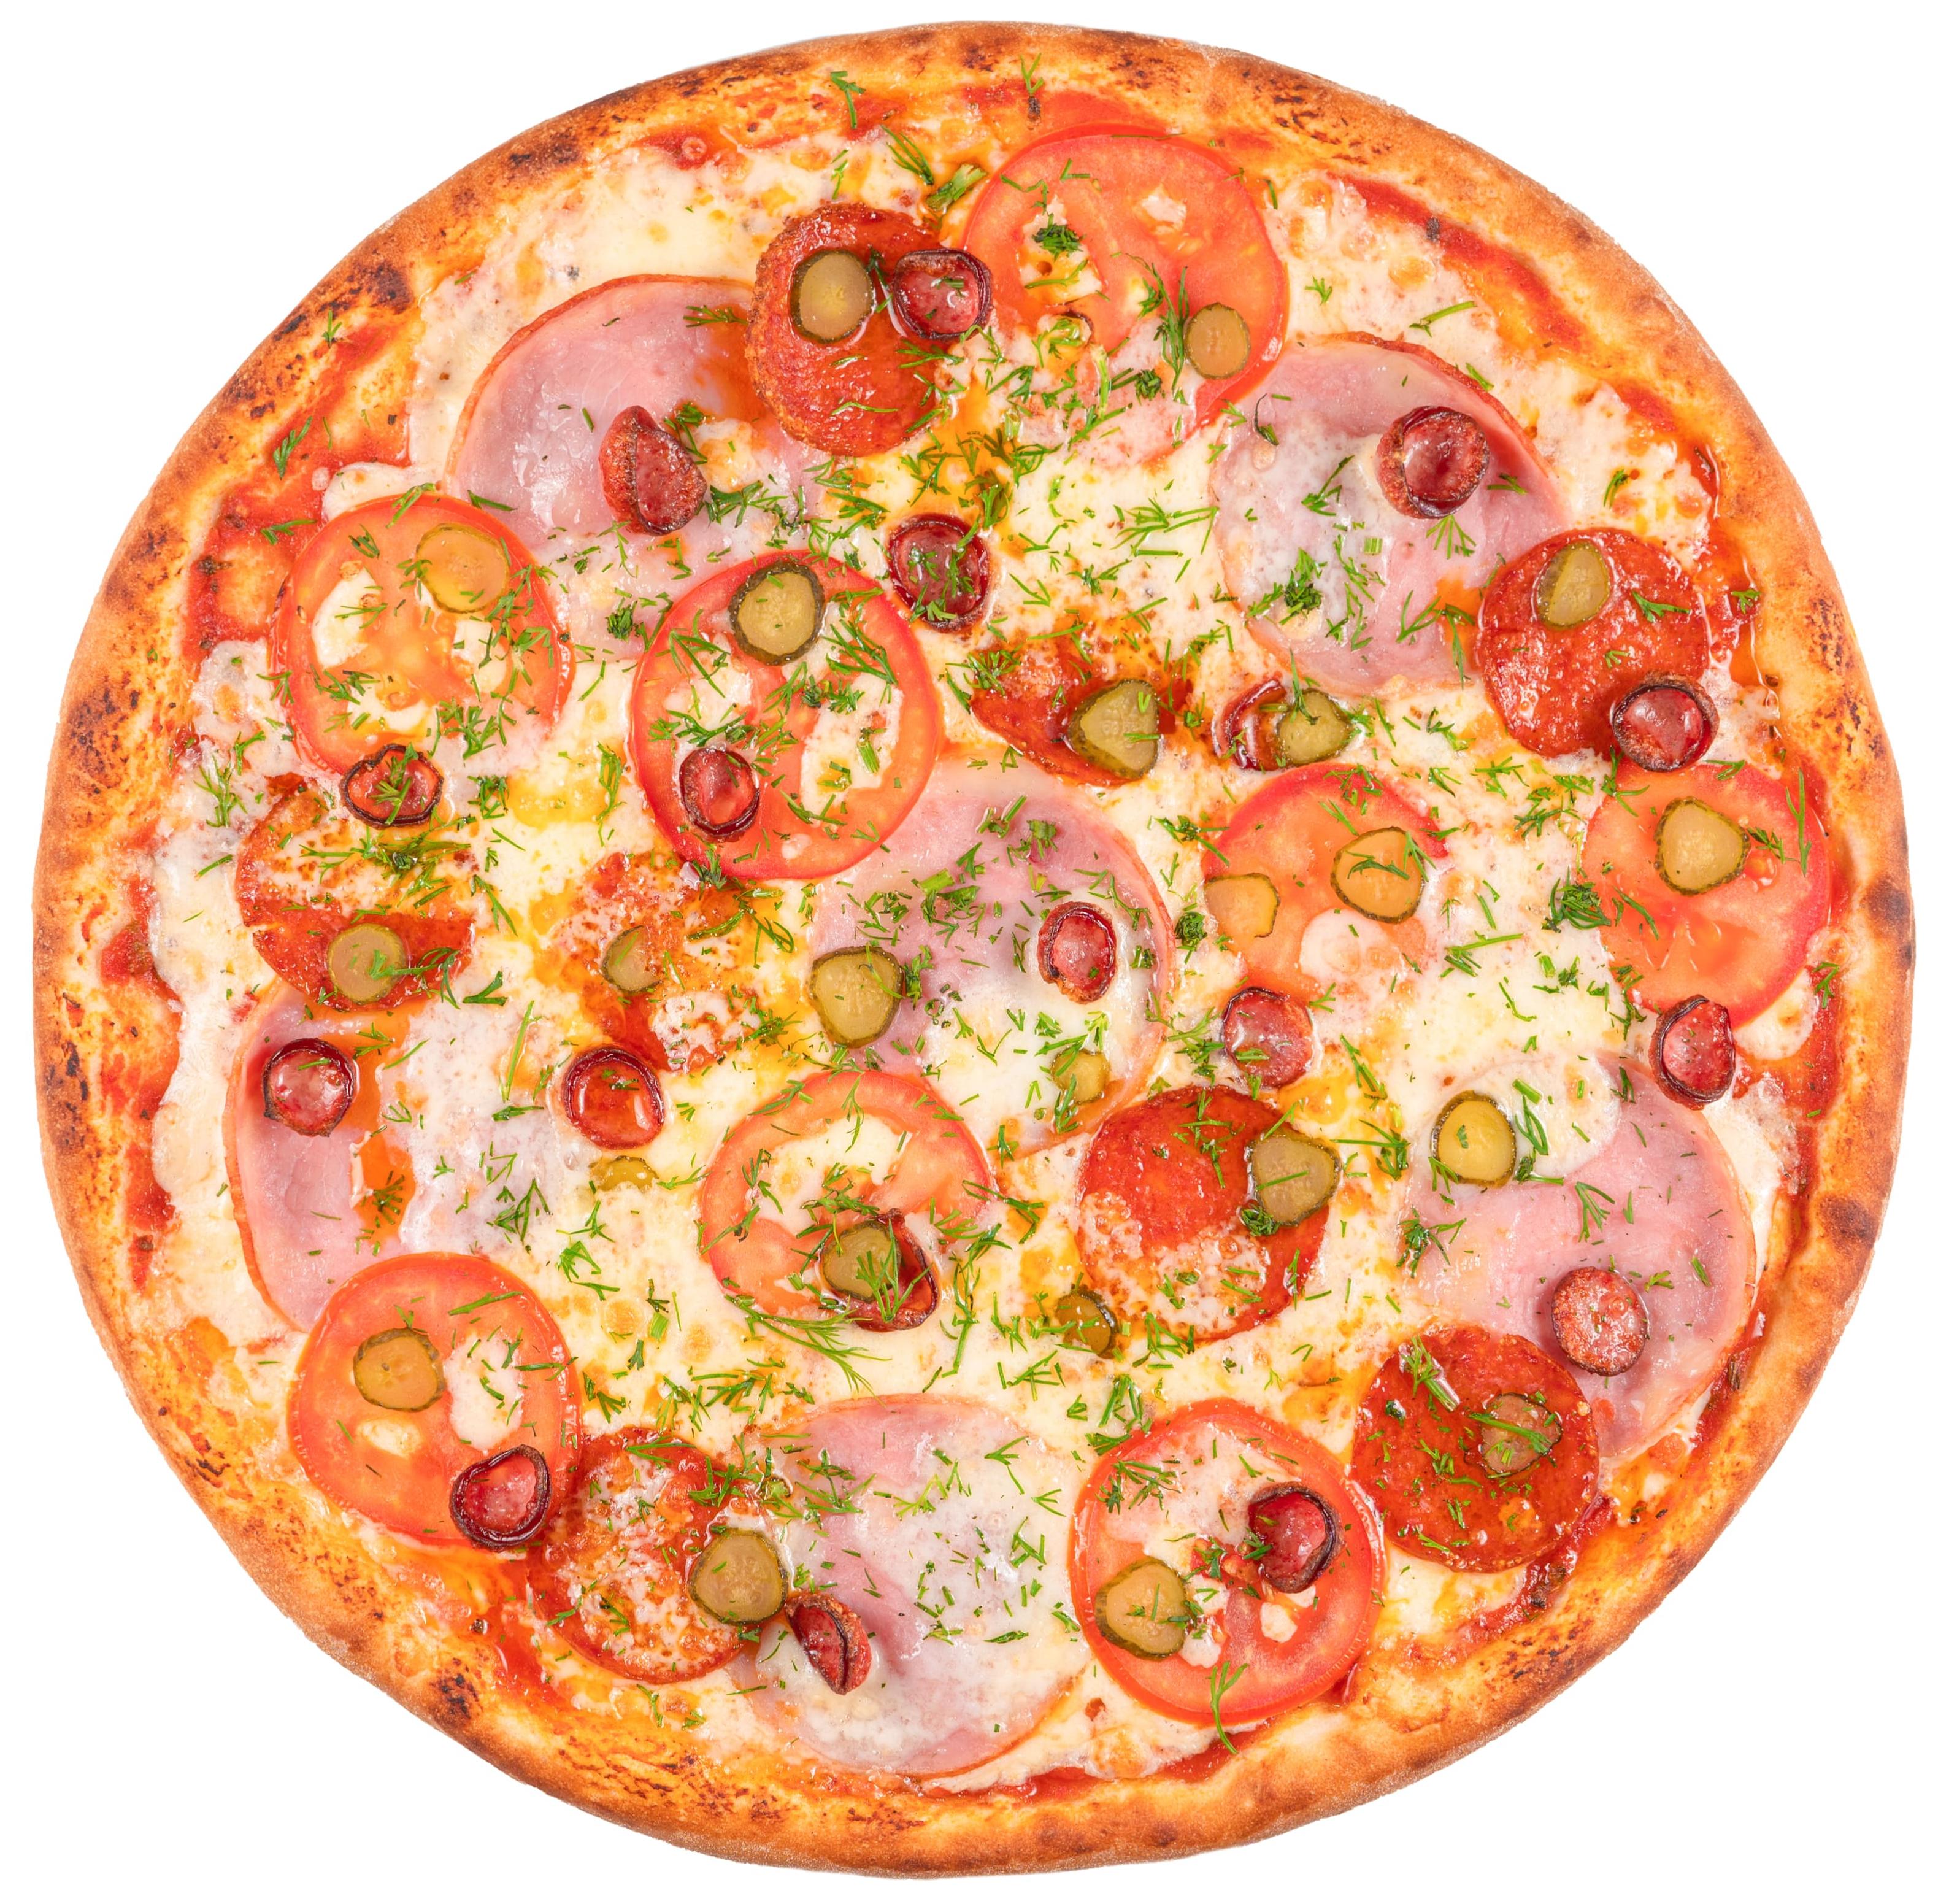 какую колбасу нужно для пиццы пепперони в домашних условиях фото 94